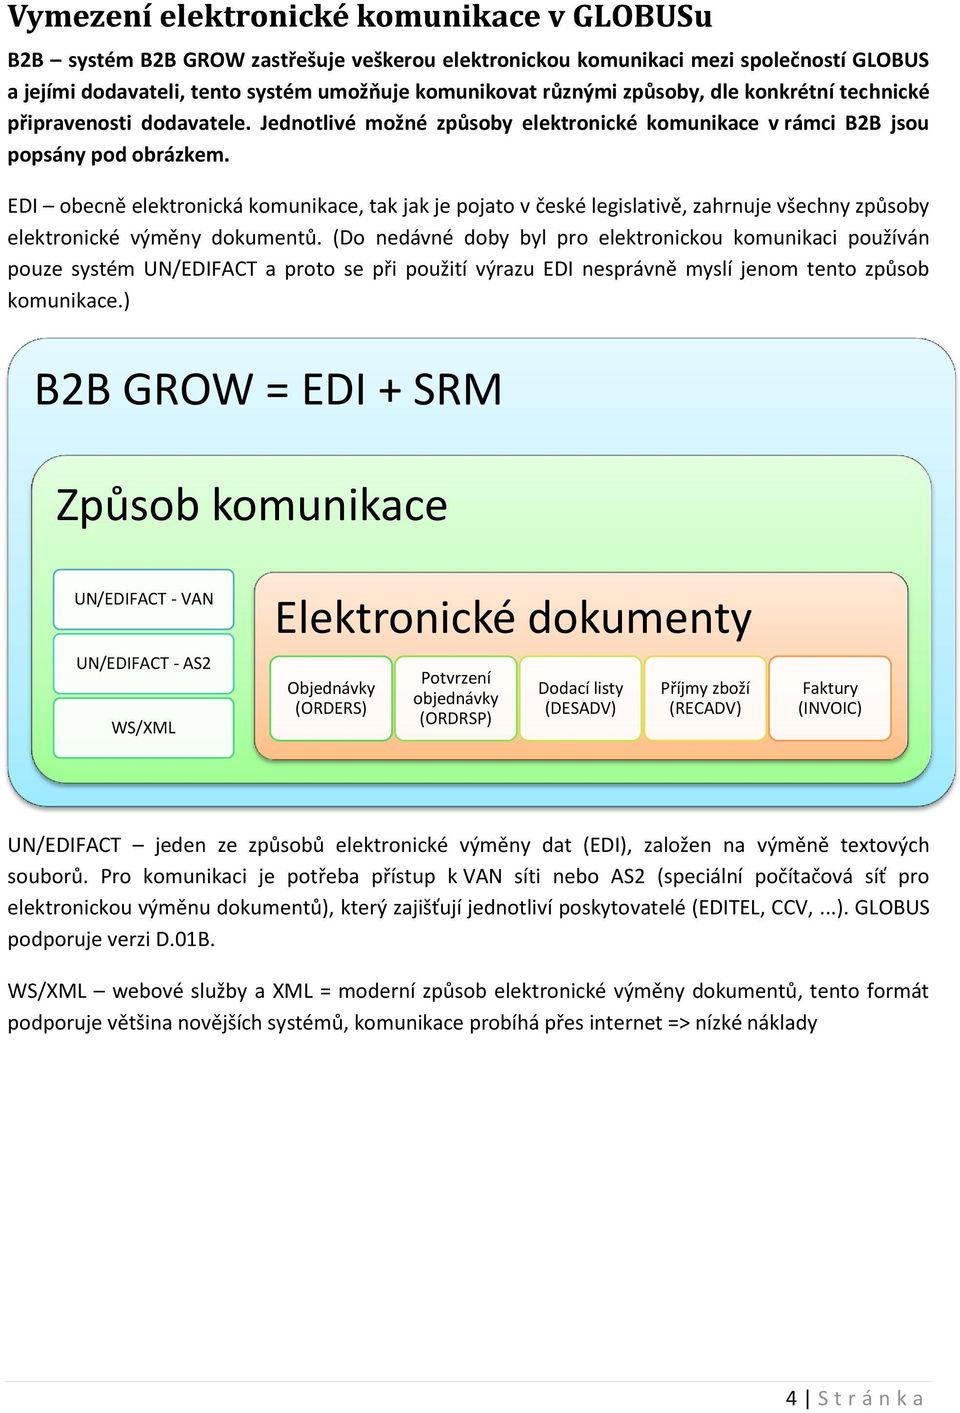 EDI obecně elektronická komunikace, tak jak je pojato v české legislativě, zahrnuje všechny způsoby elektronické výměny dokumentů.